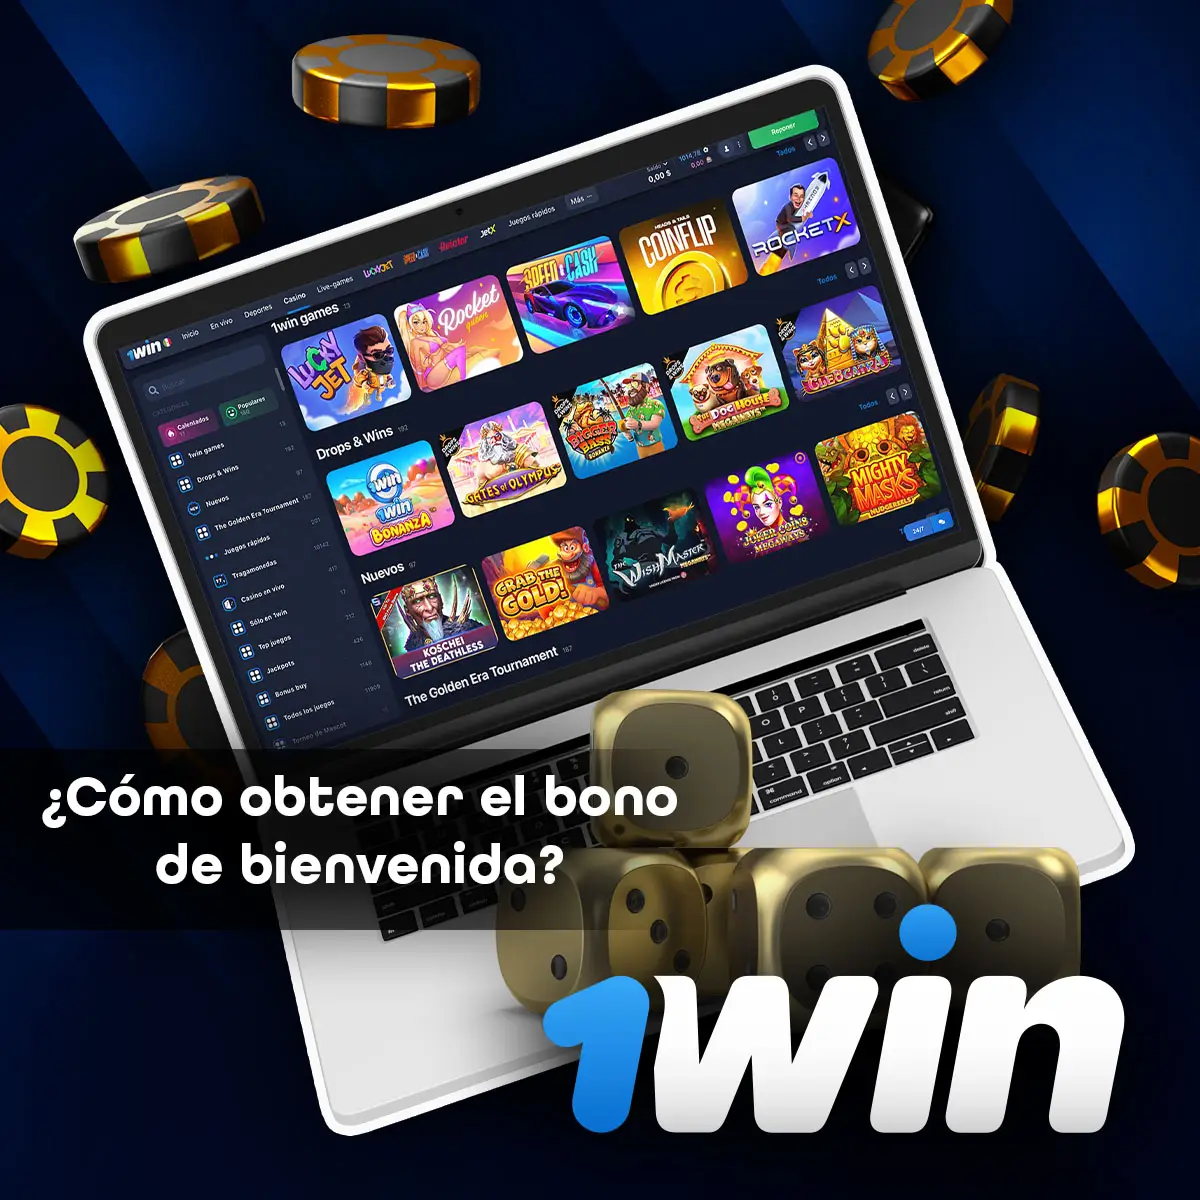 Un gran número de juegos de casino en la aplicación móvil de 1win